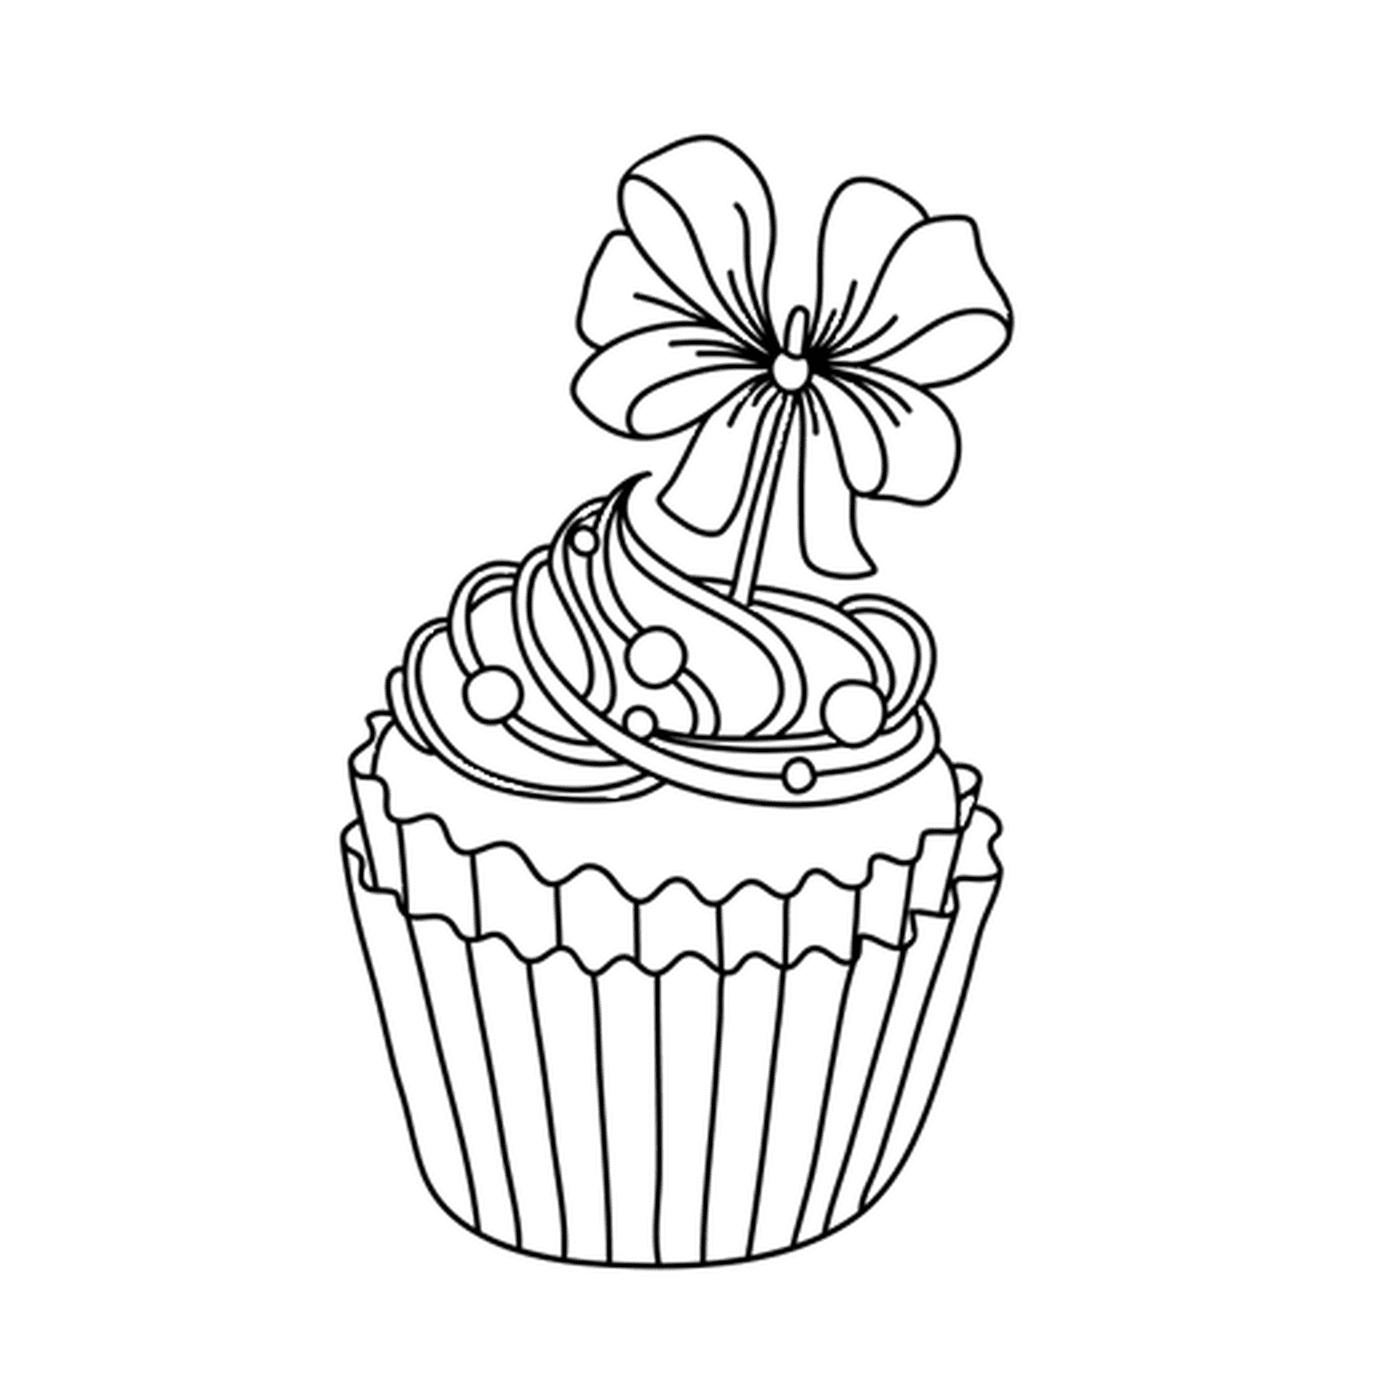  Un pastelito festivo para comer, con una flor 